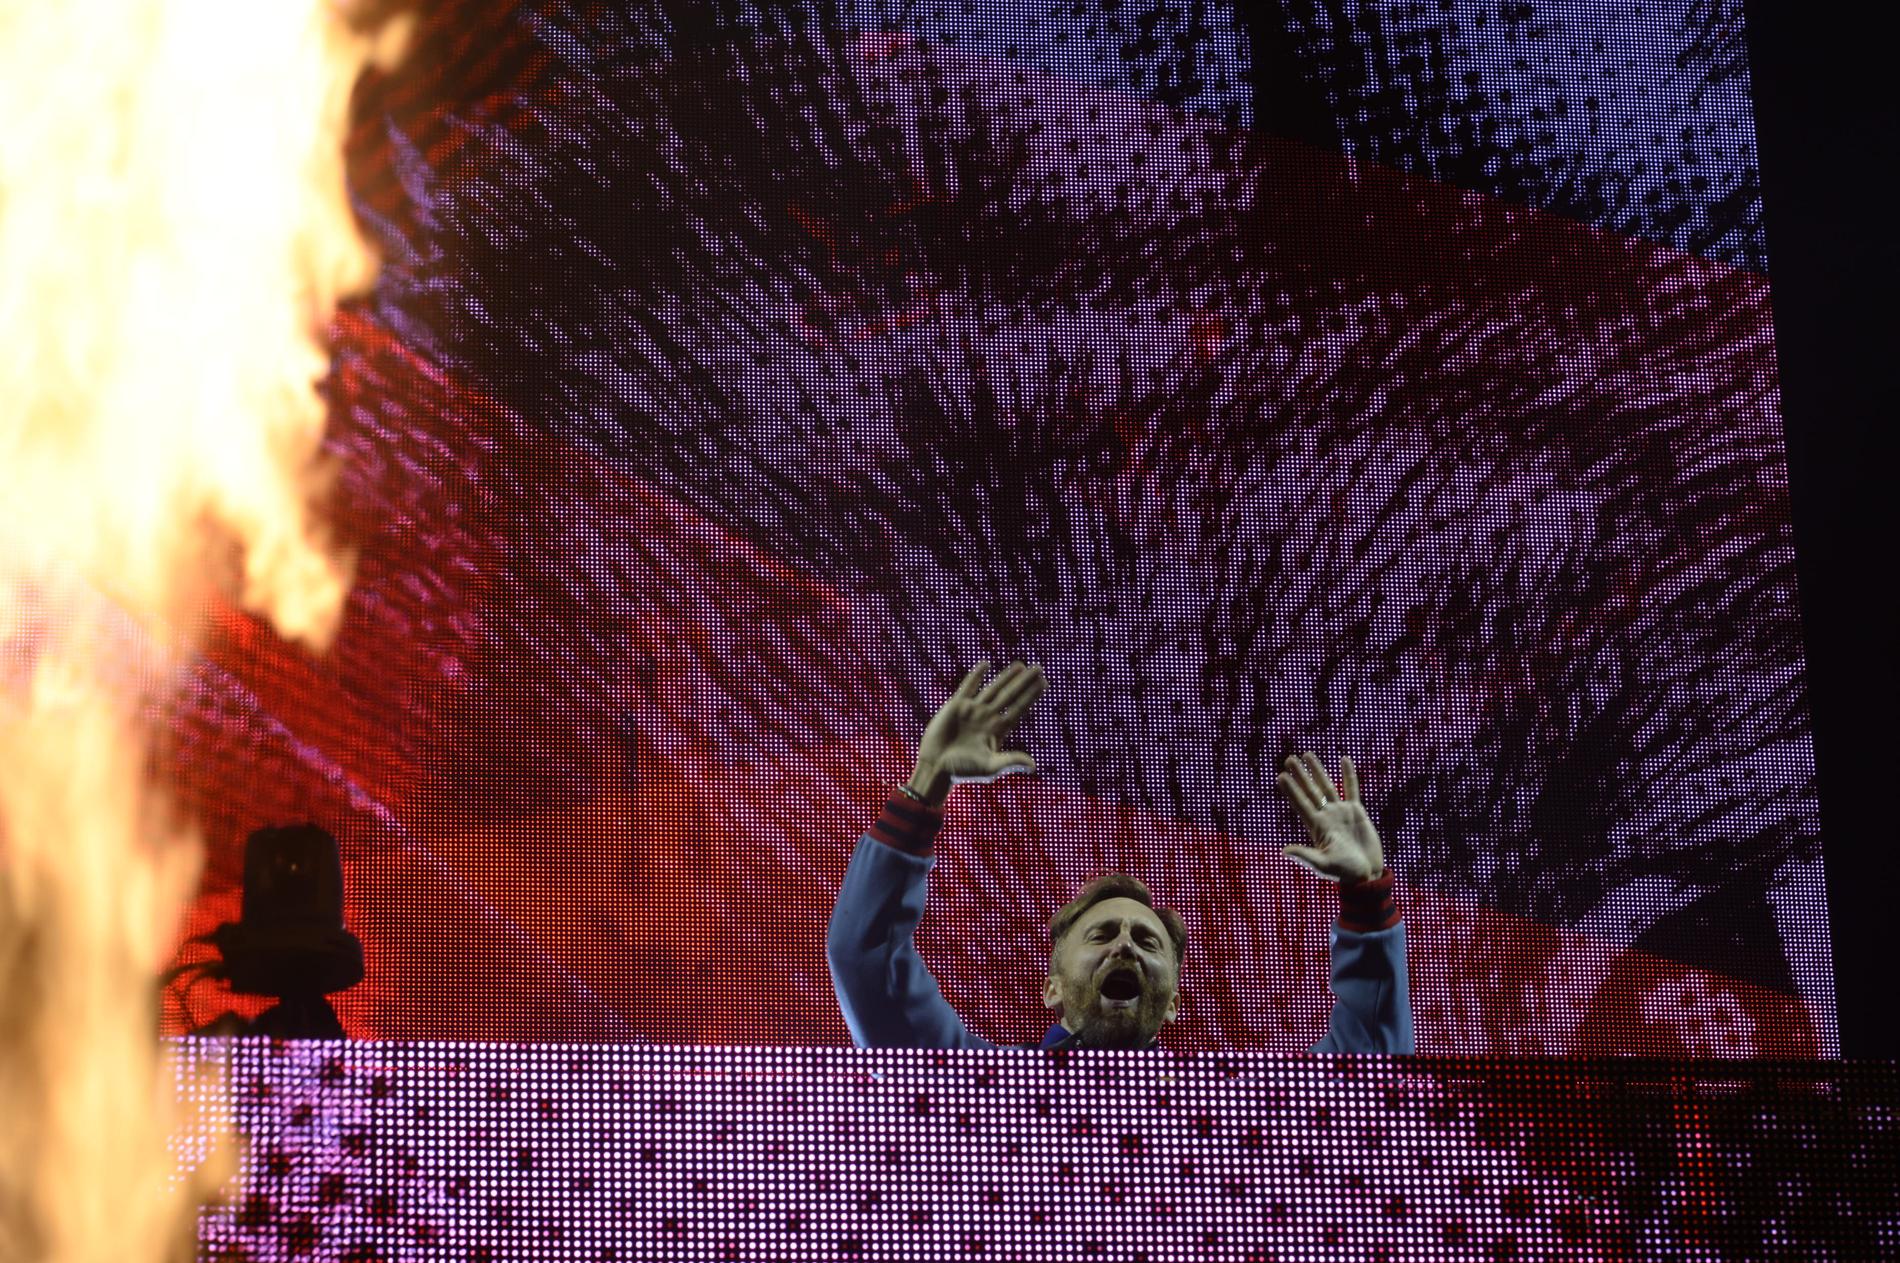 David Guetta er Utopias headliner og er regnet som en av verdens største EDM-artister.